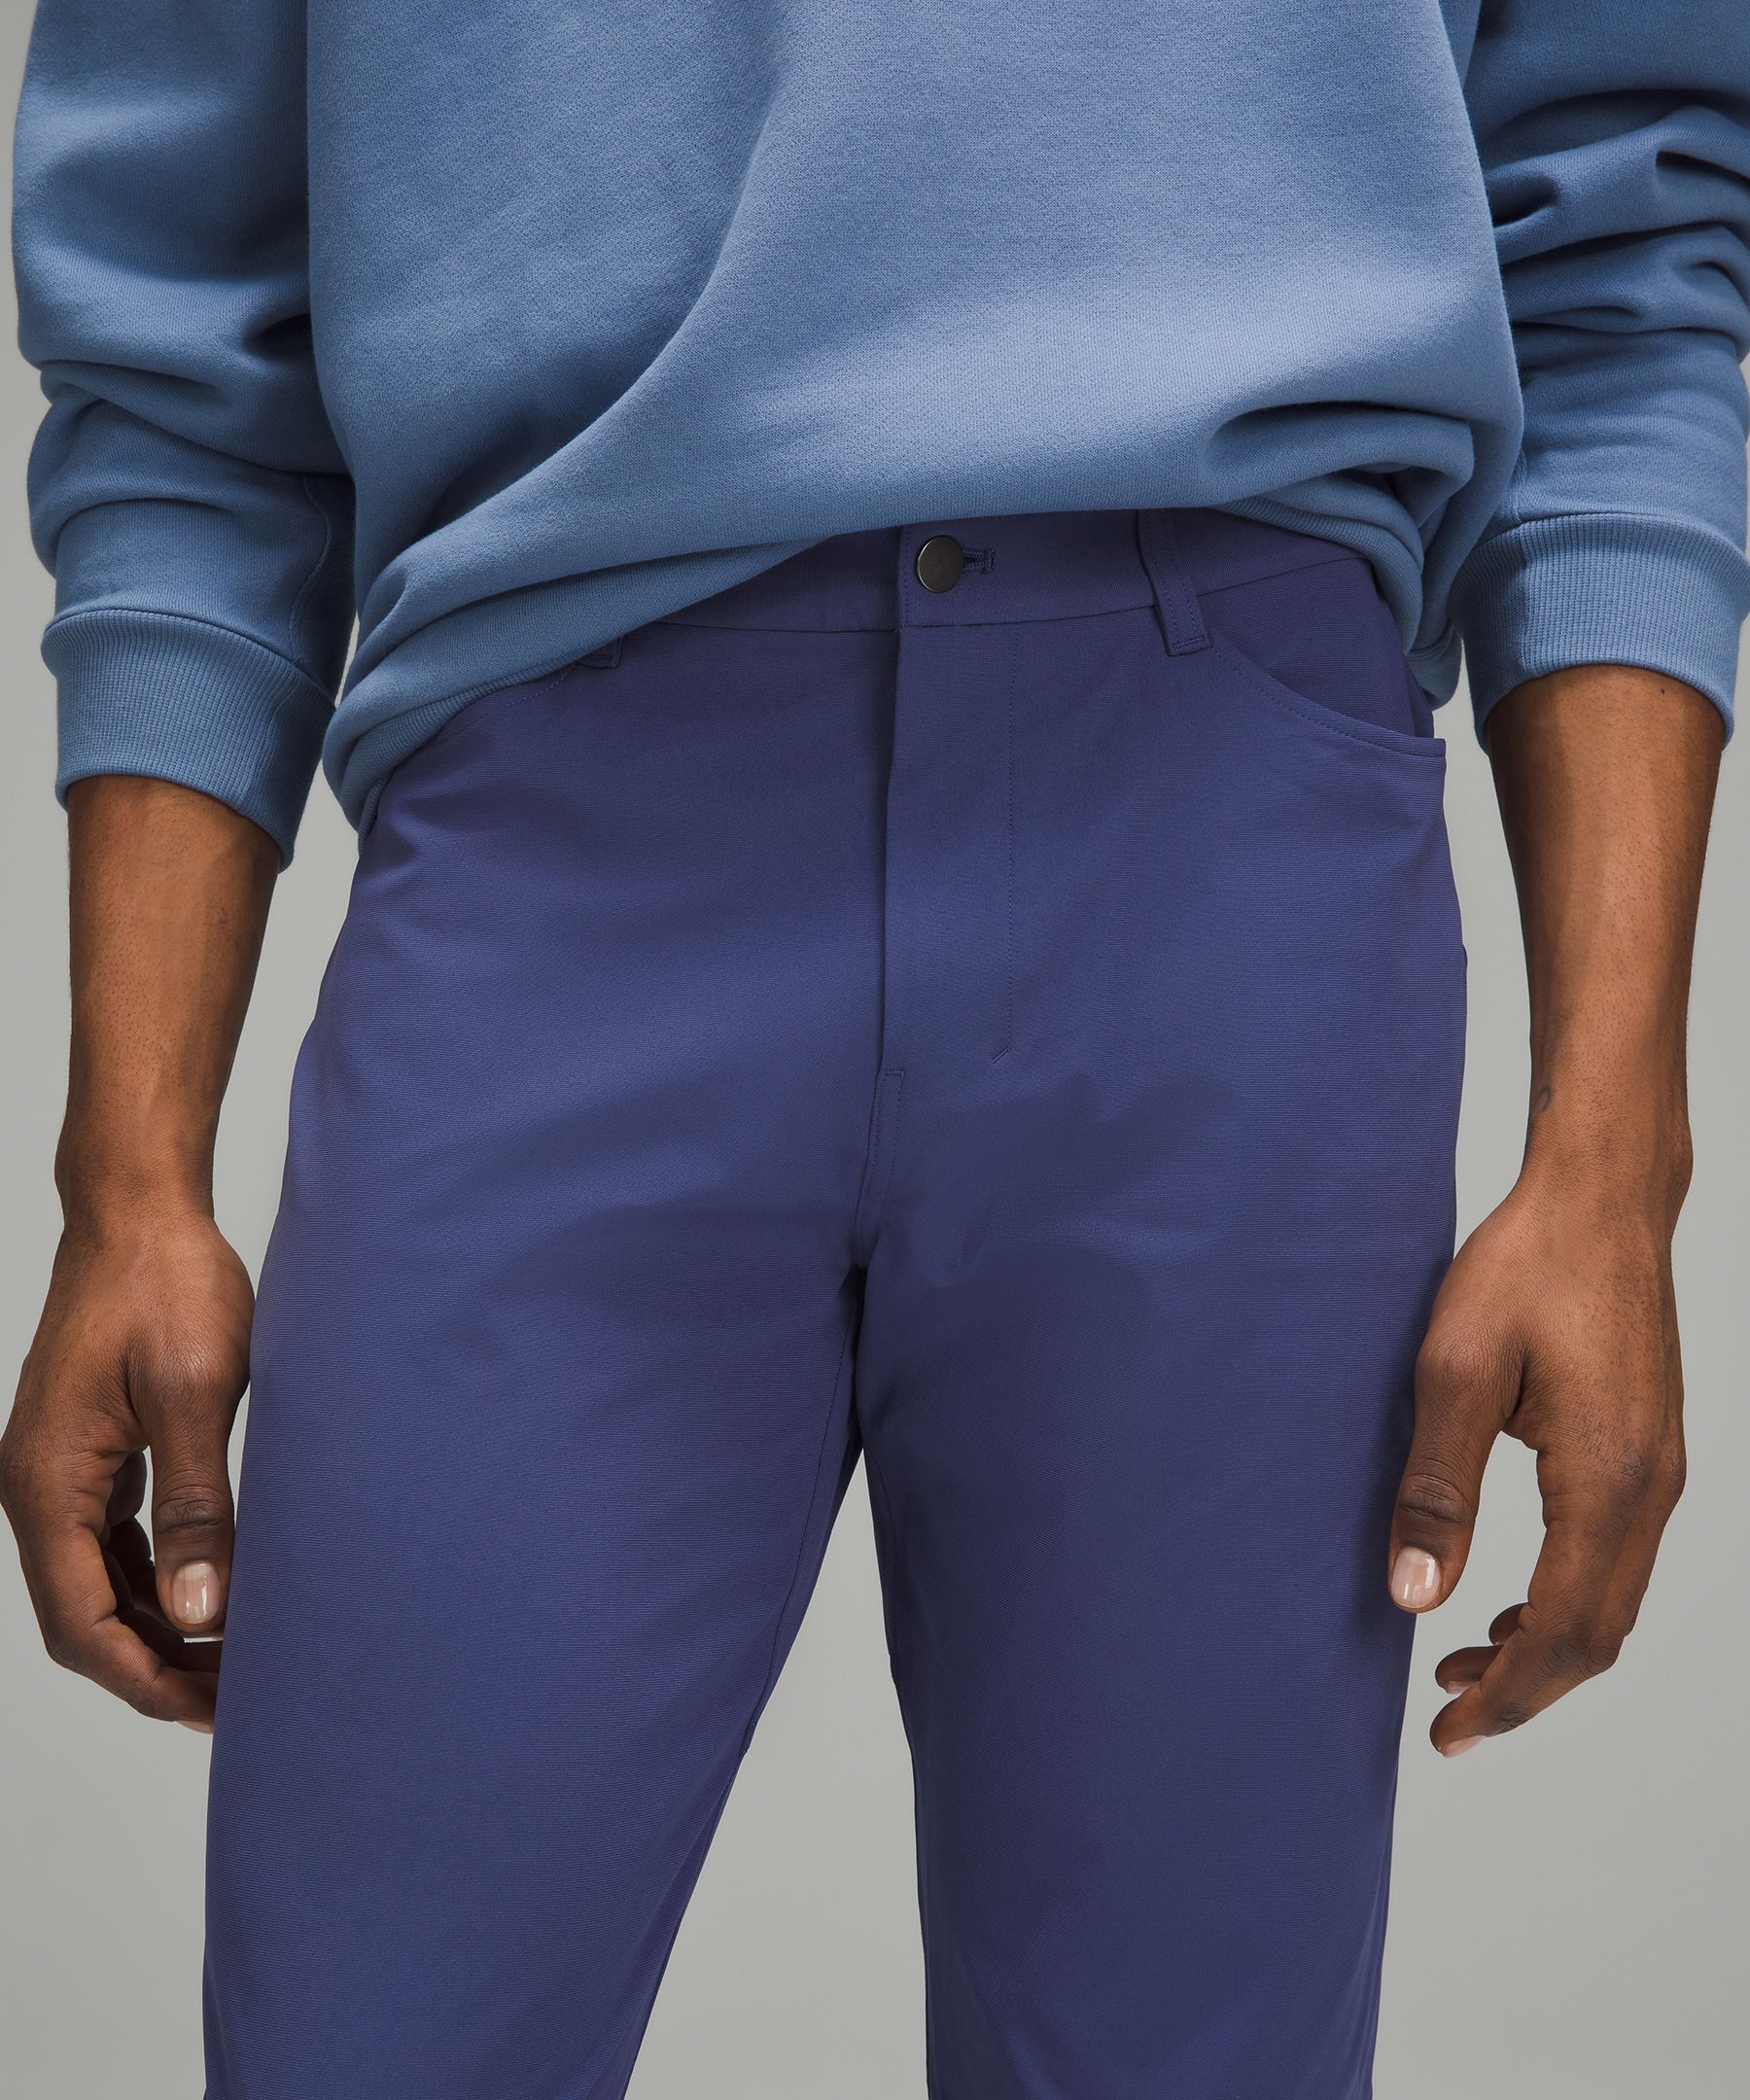 lululemon athletica Abc Slim-fit Trouser 30l Warpstreme - Color Blue -  Size 28 for Men